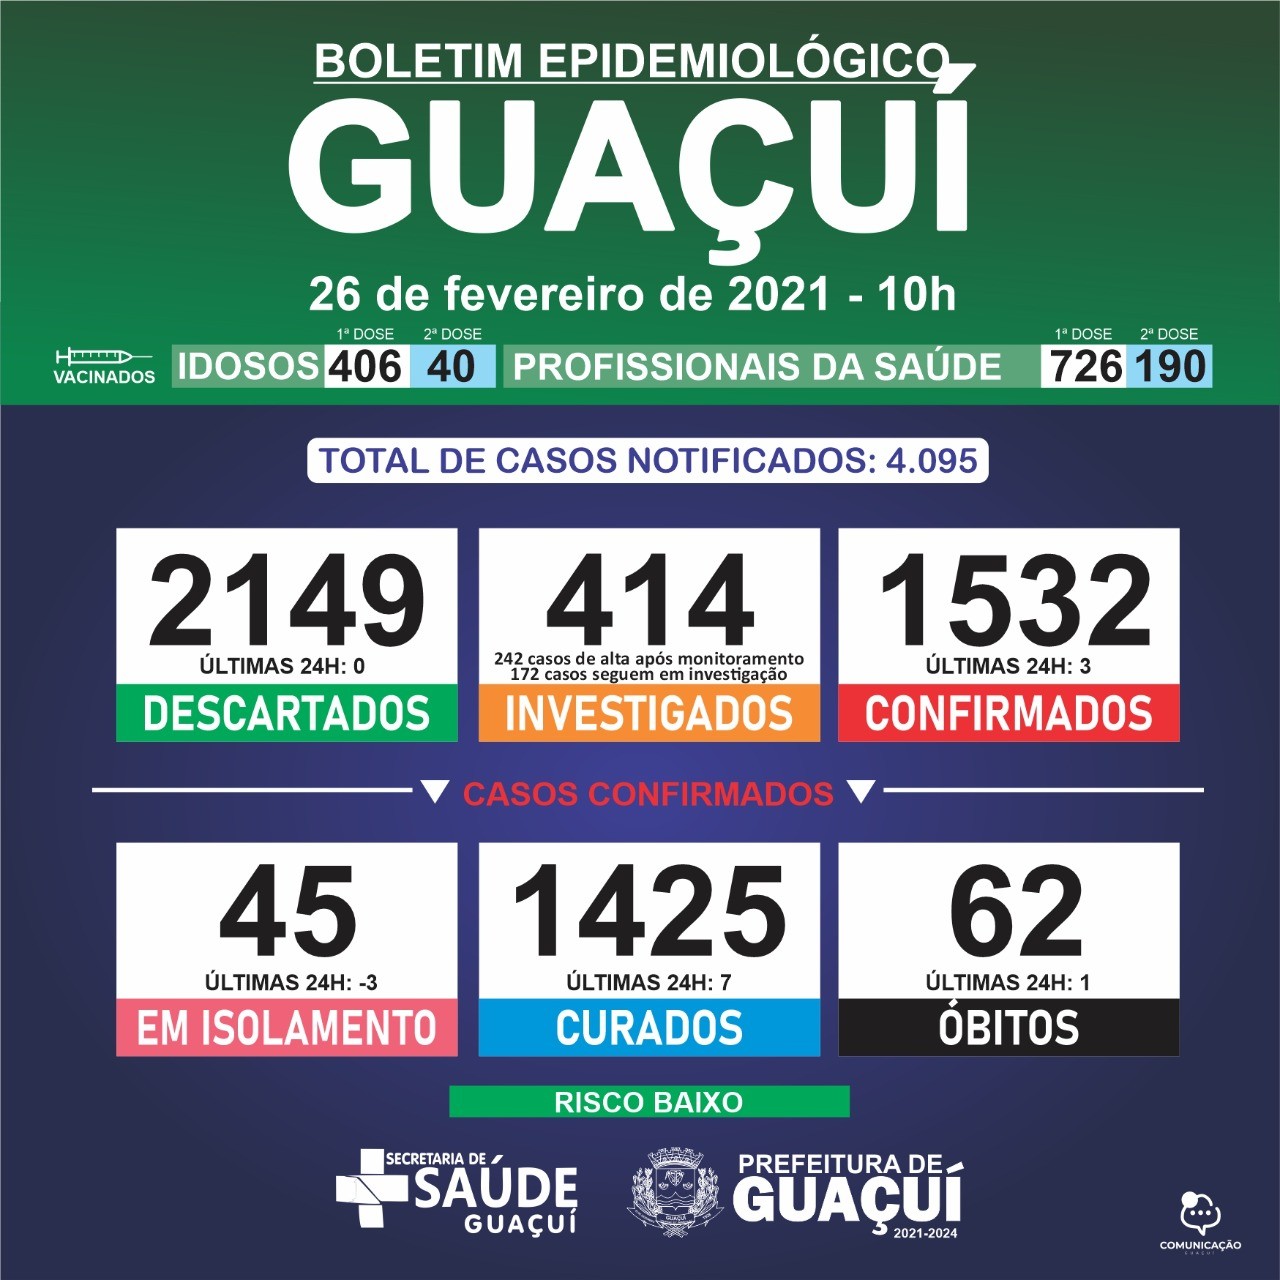 Boletim Epidemiológico 26/02/21: Guaçuí registra mais 1 óbito, 7 curados e 3 casos confirmados de Covid-19